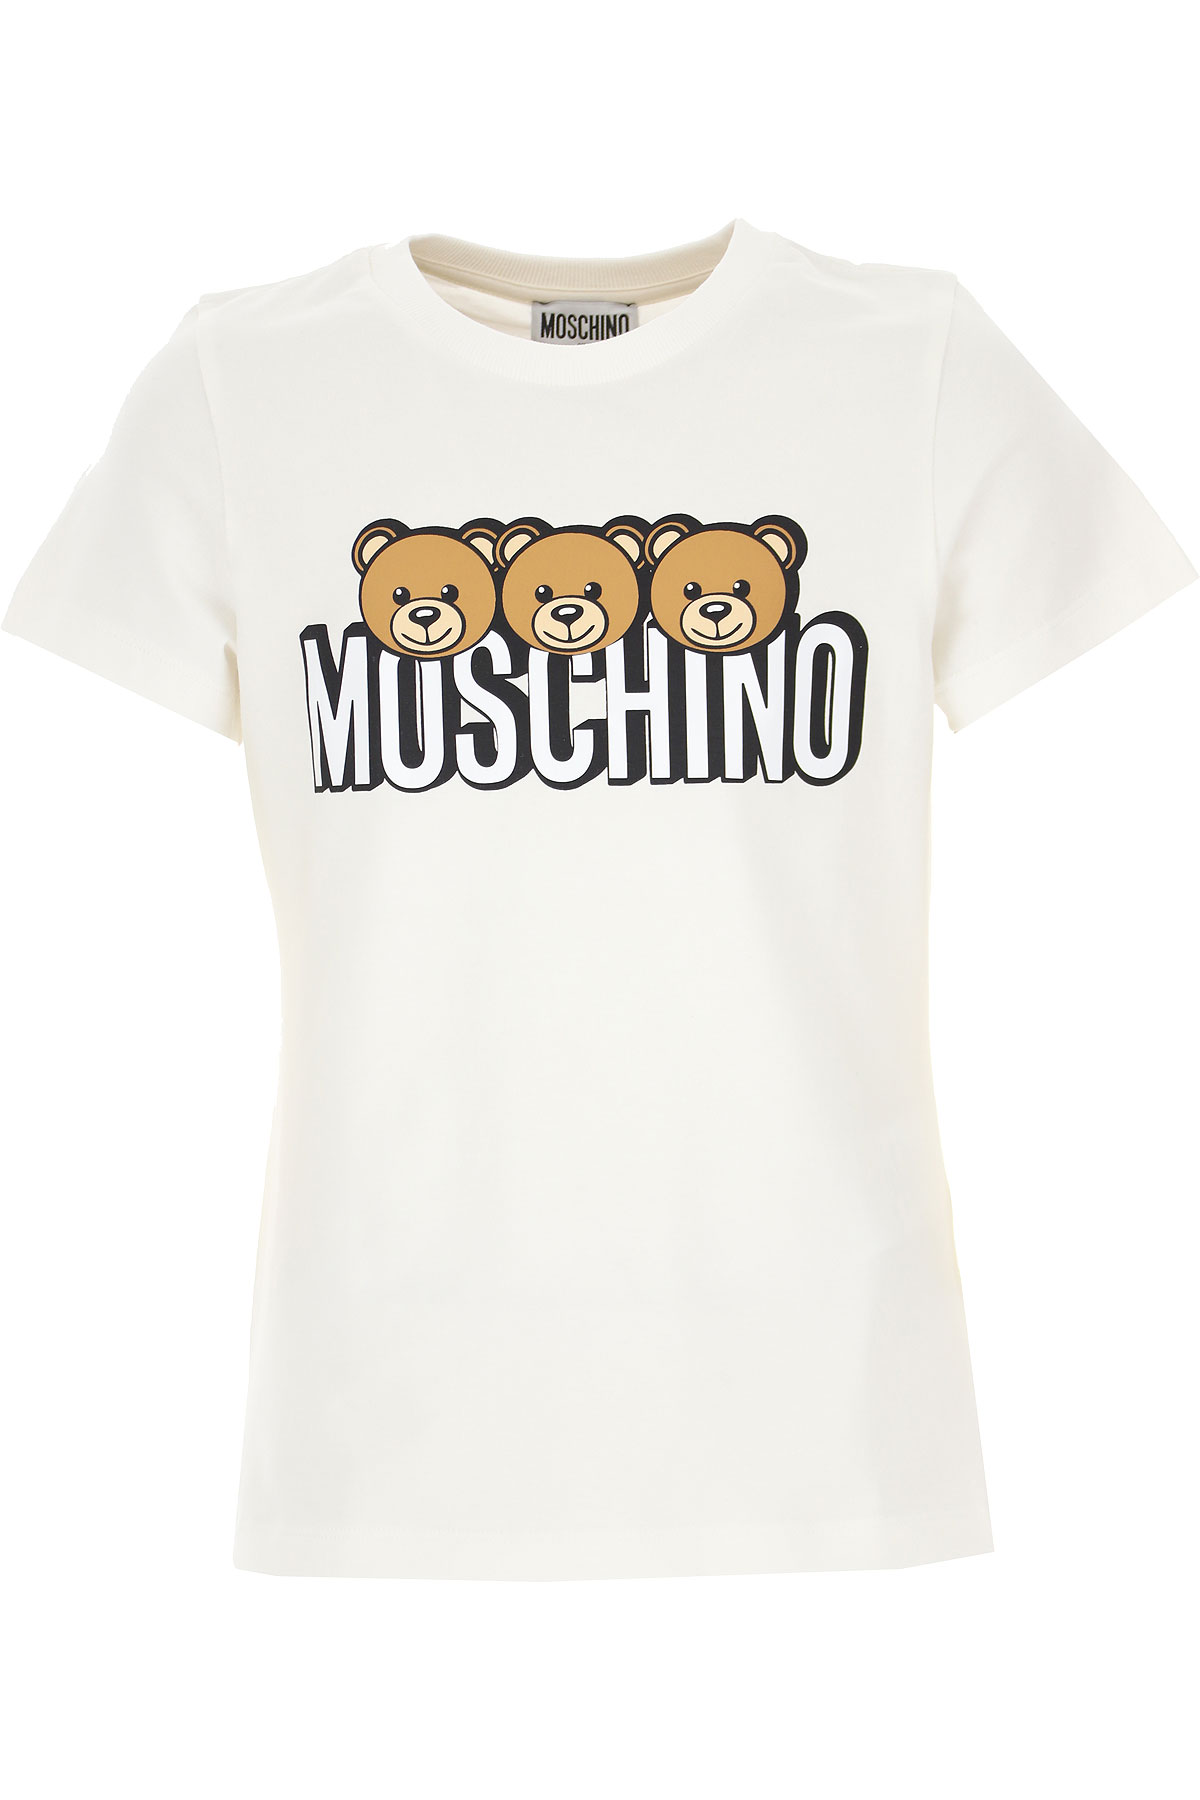 Girls Clothing Moschino, Style code: hom02s-lba24-10063